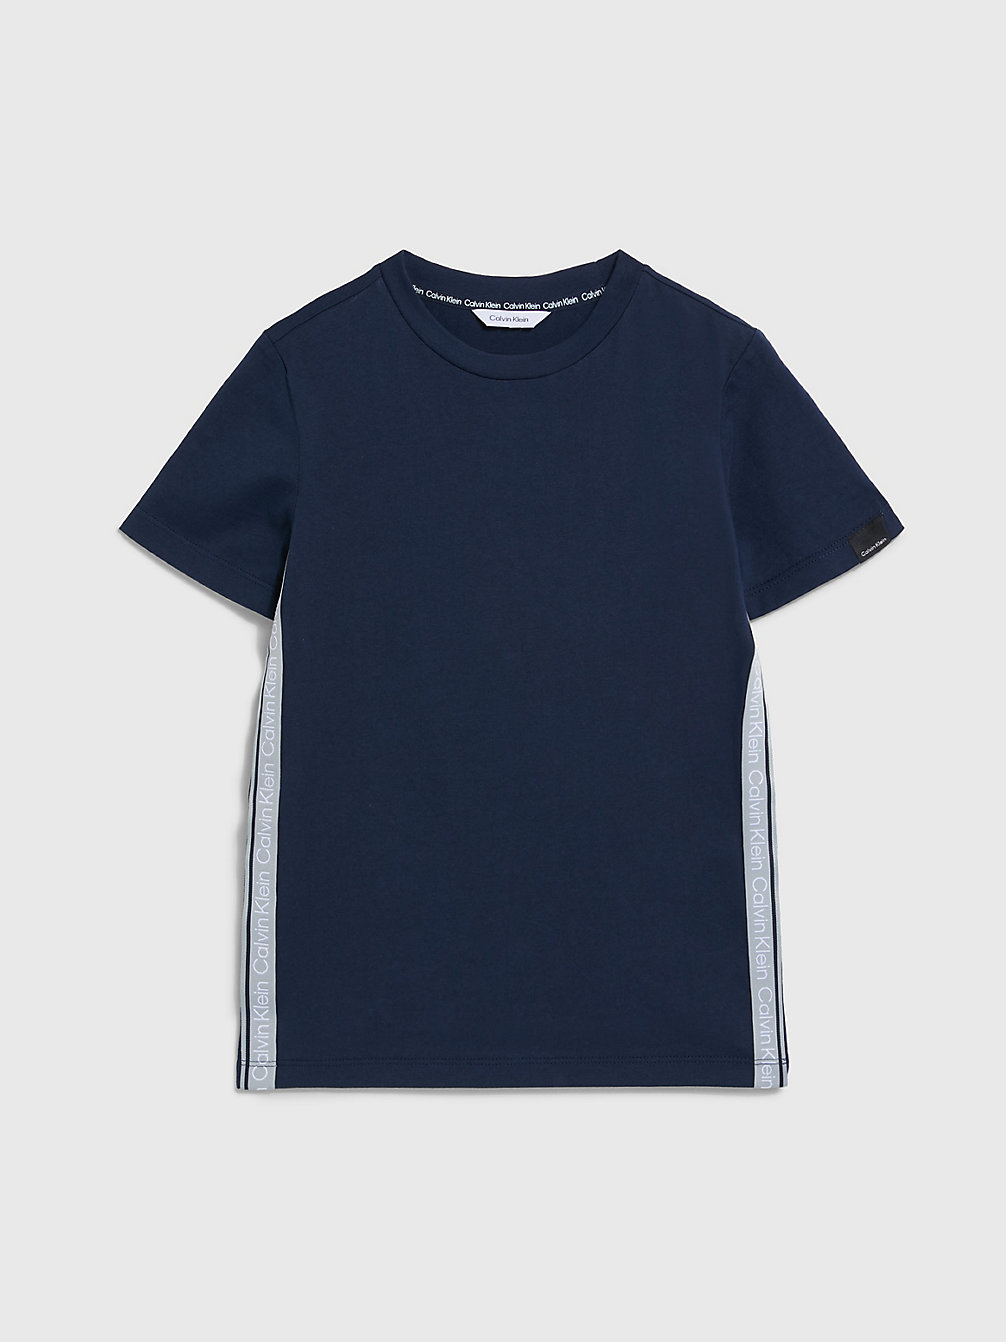 NAVY IRIS > T-Shirt Plażowe Chłopięce - Logo Tape > undefined boys - Calvin Klein